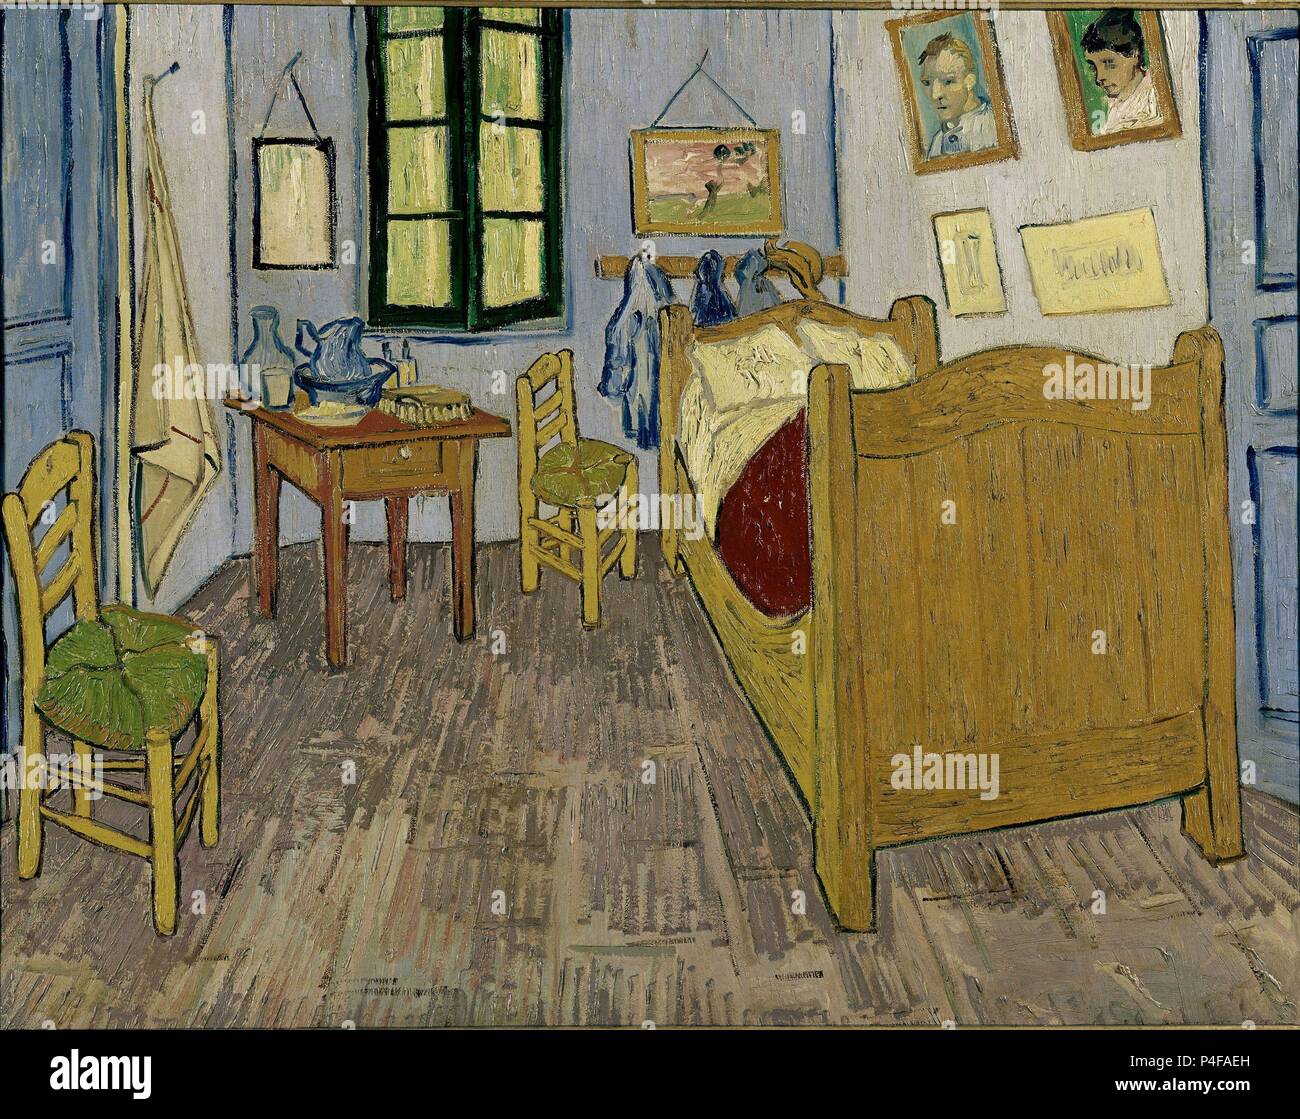 L'école néerlandaise. La chambre de Van Gogh à Arles. 1889. Huile sur toile (57 x 74 cm). Paris, musée d'Orsay. Auteur : Vincent van Gogh (1853-1890). Lieu : MUSÉE D'Orsay, France. Banque D'Images